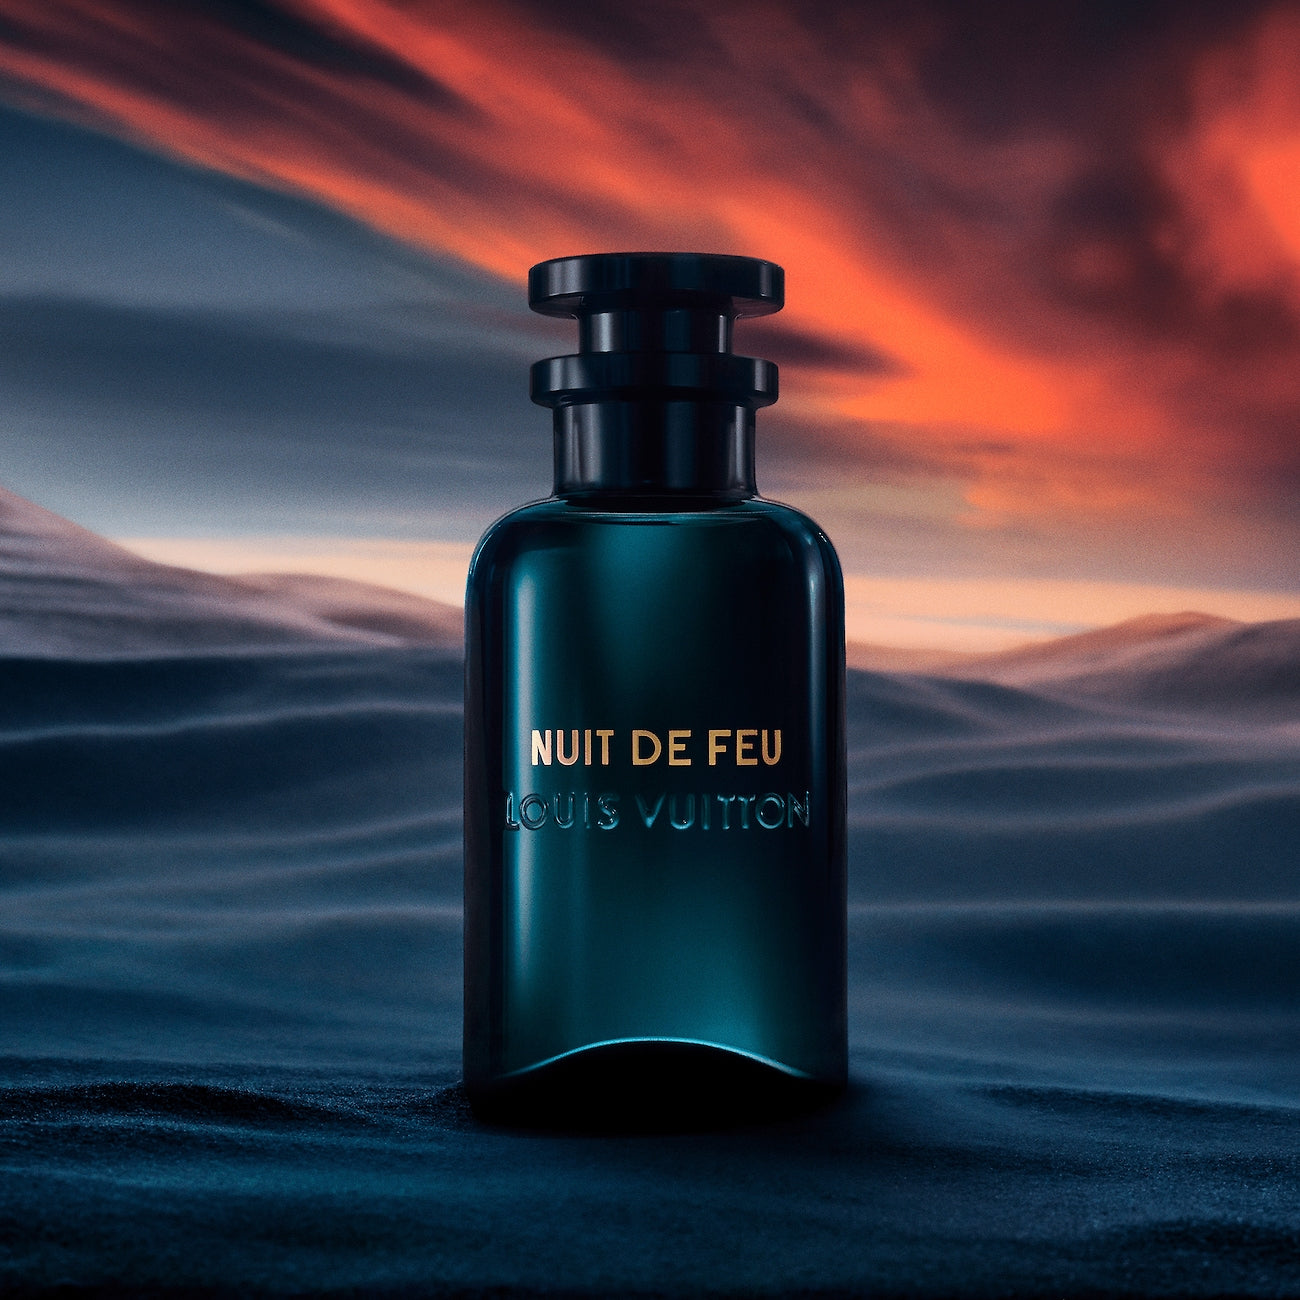 Ombre nomade - Louis Vuitton - Eau de parfum - 90/100ml